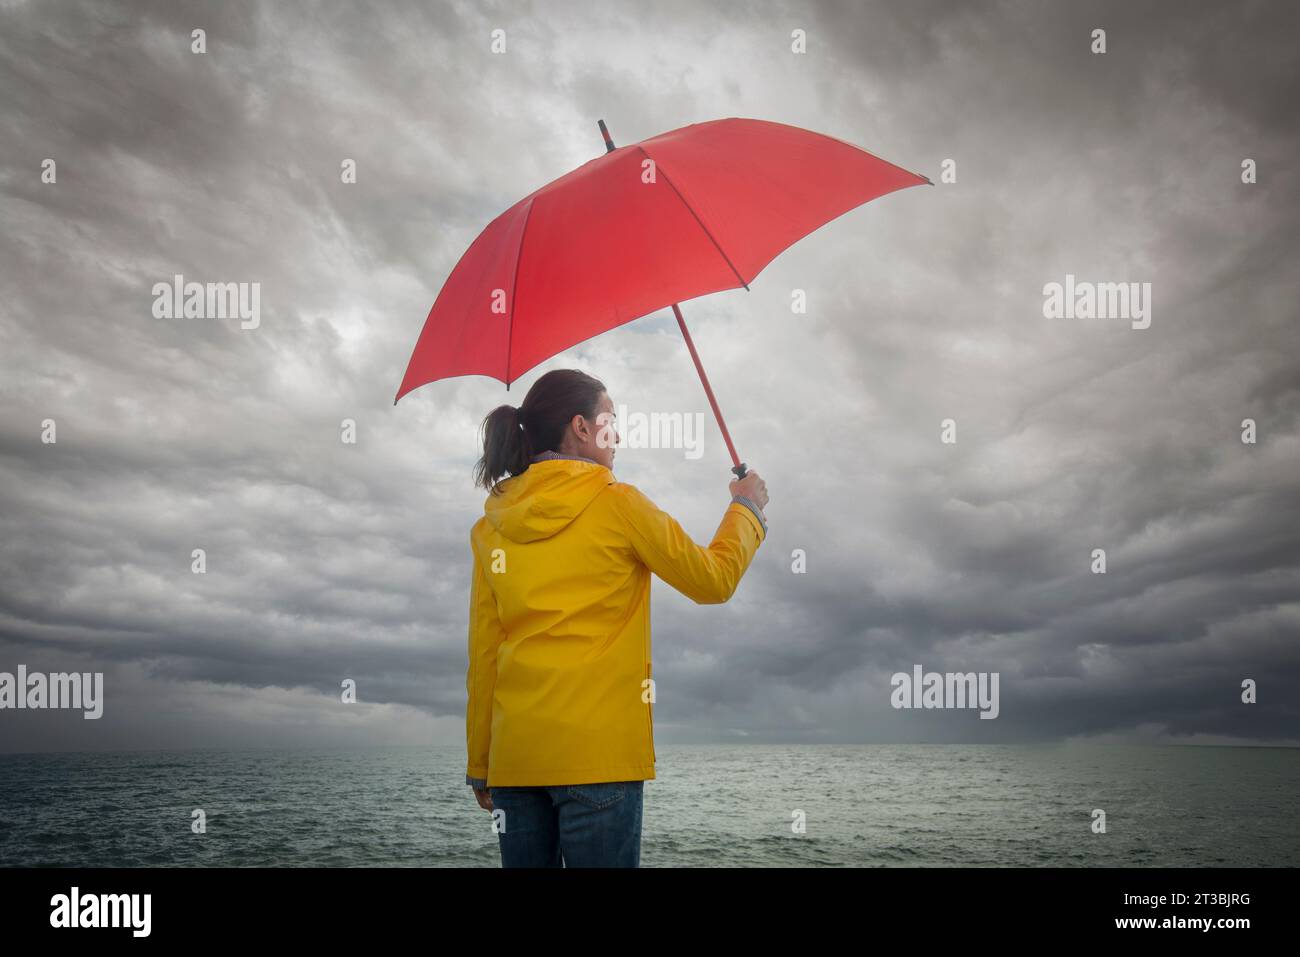 Eine Frau, die einen stürmischen Himmel sieht, einen roten Regenschirm hält und einen gelben Mantel trägt. Stürmisches Wetterkonzept. Stockfoto